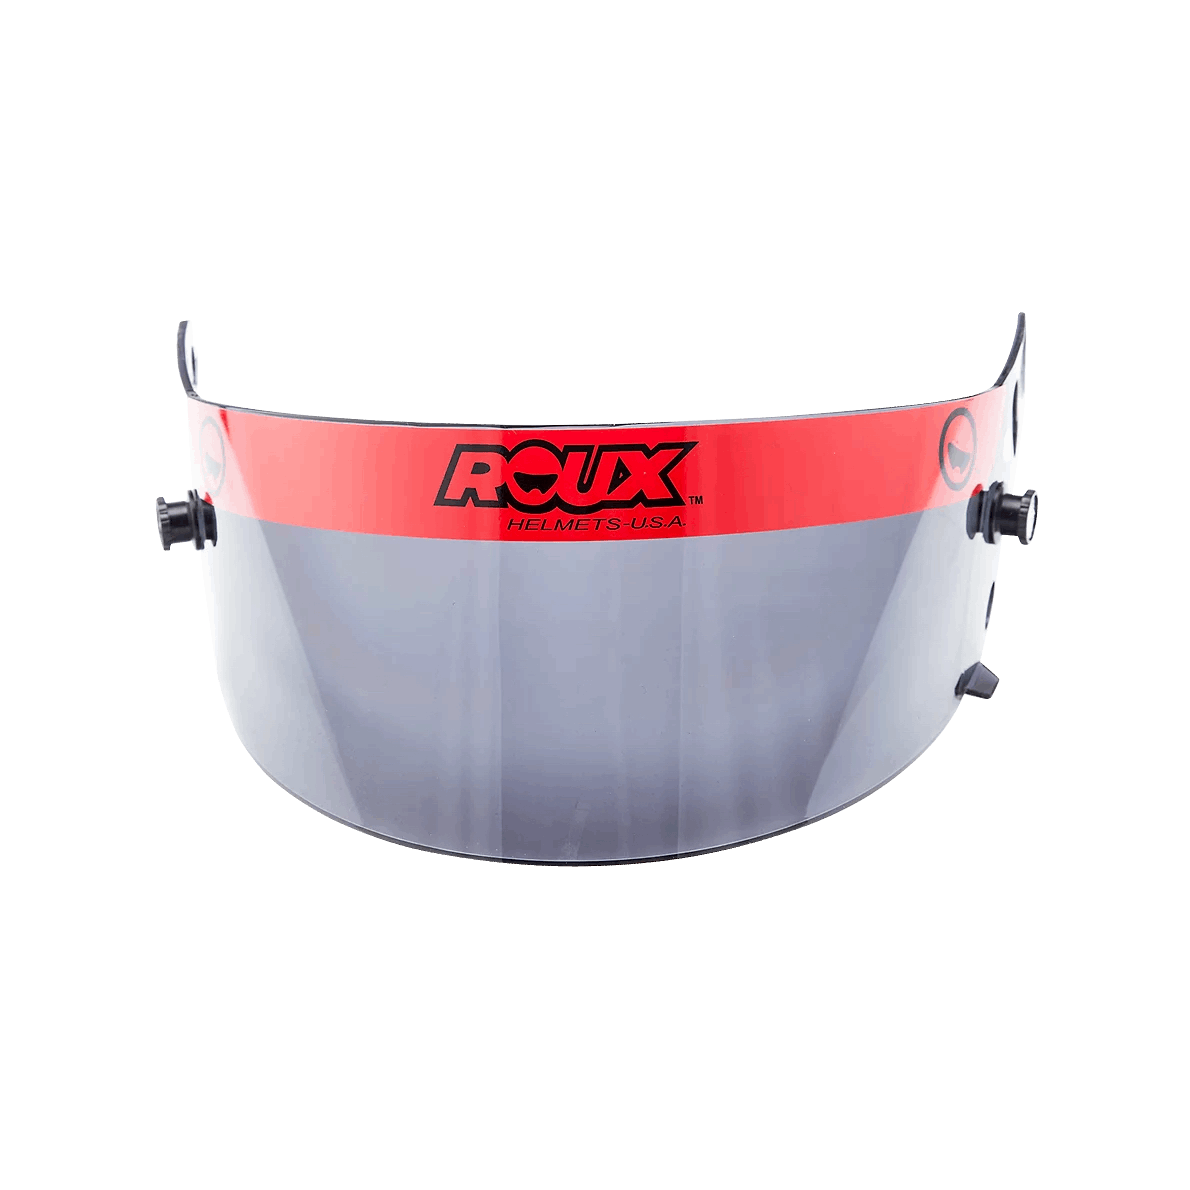 Roux Dark Smoke Tinted Shield